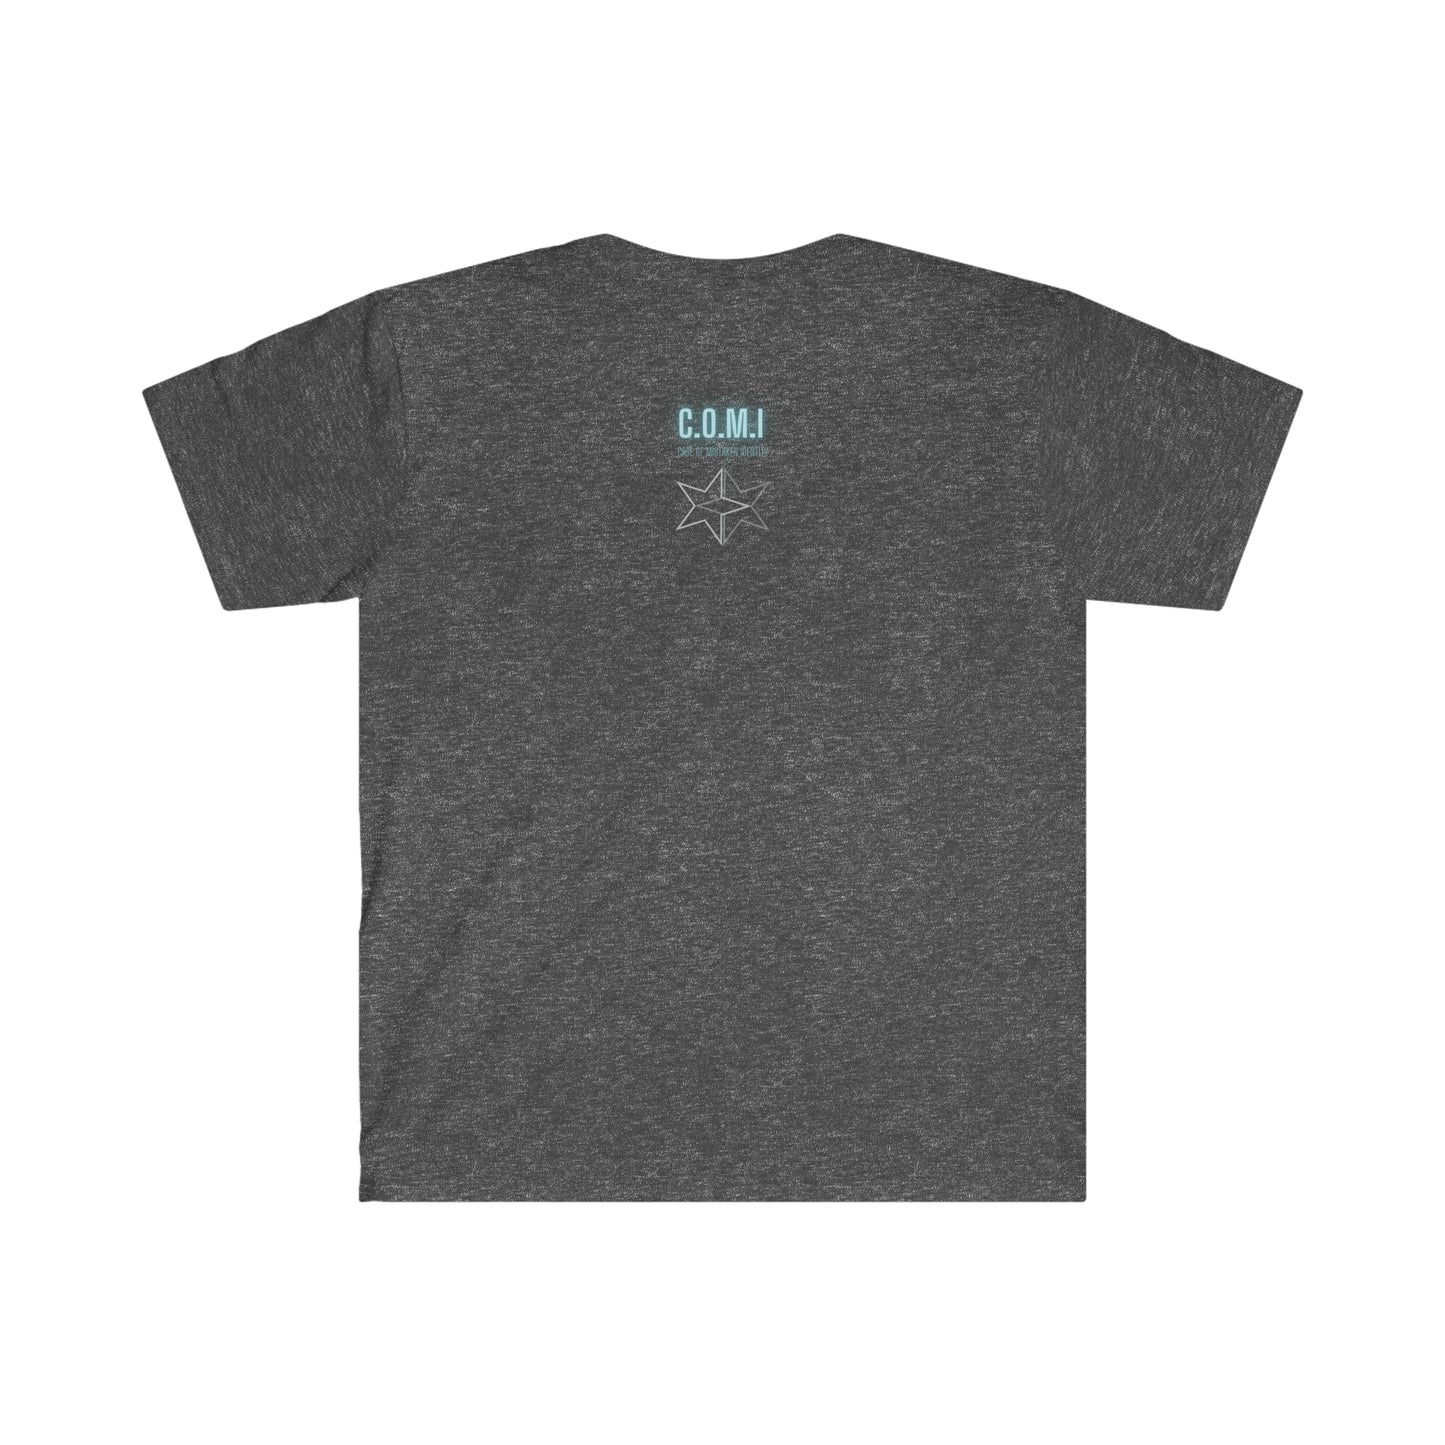 E30 M3 - Punk'd - Unisex Softstyle T-Shirt